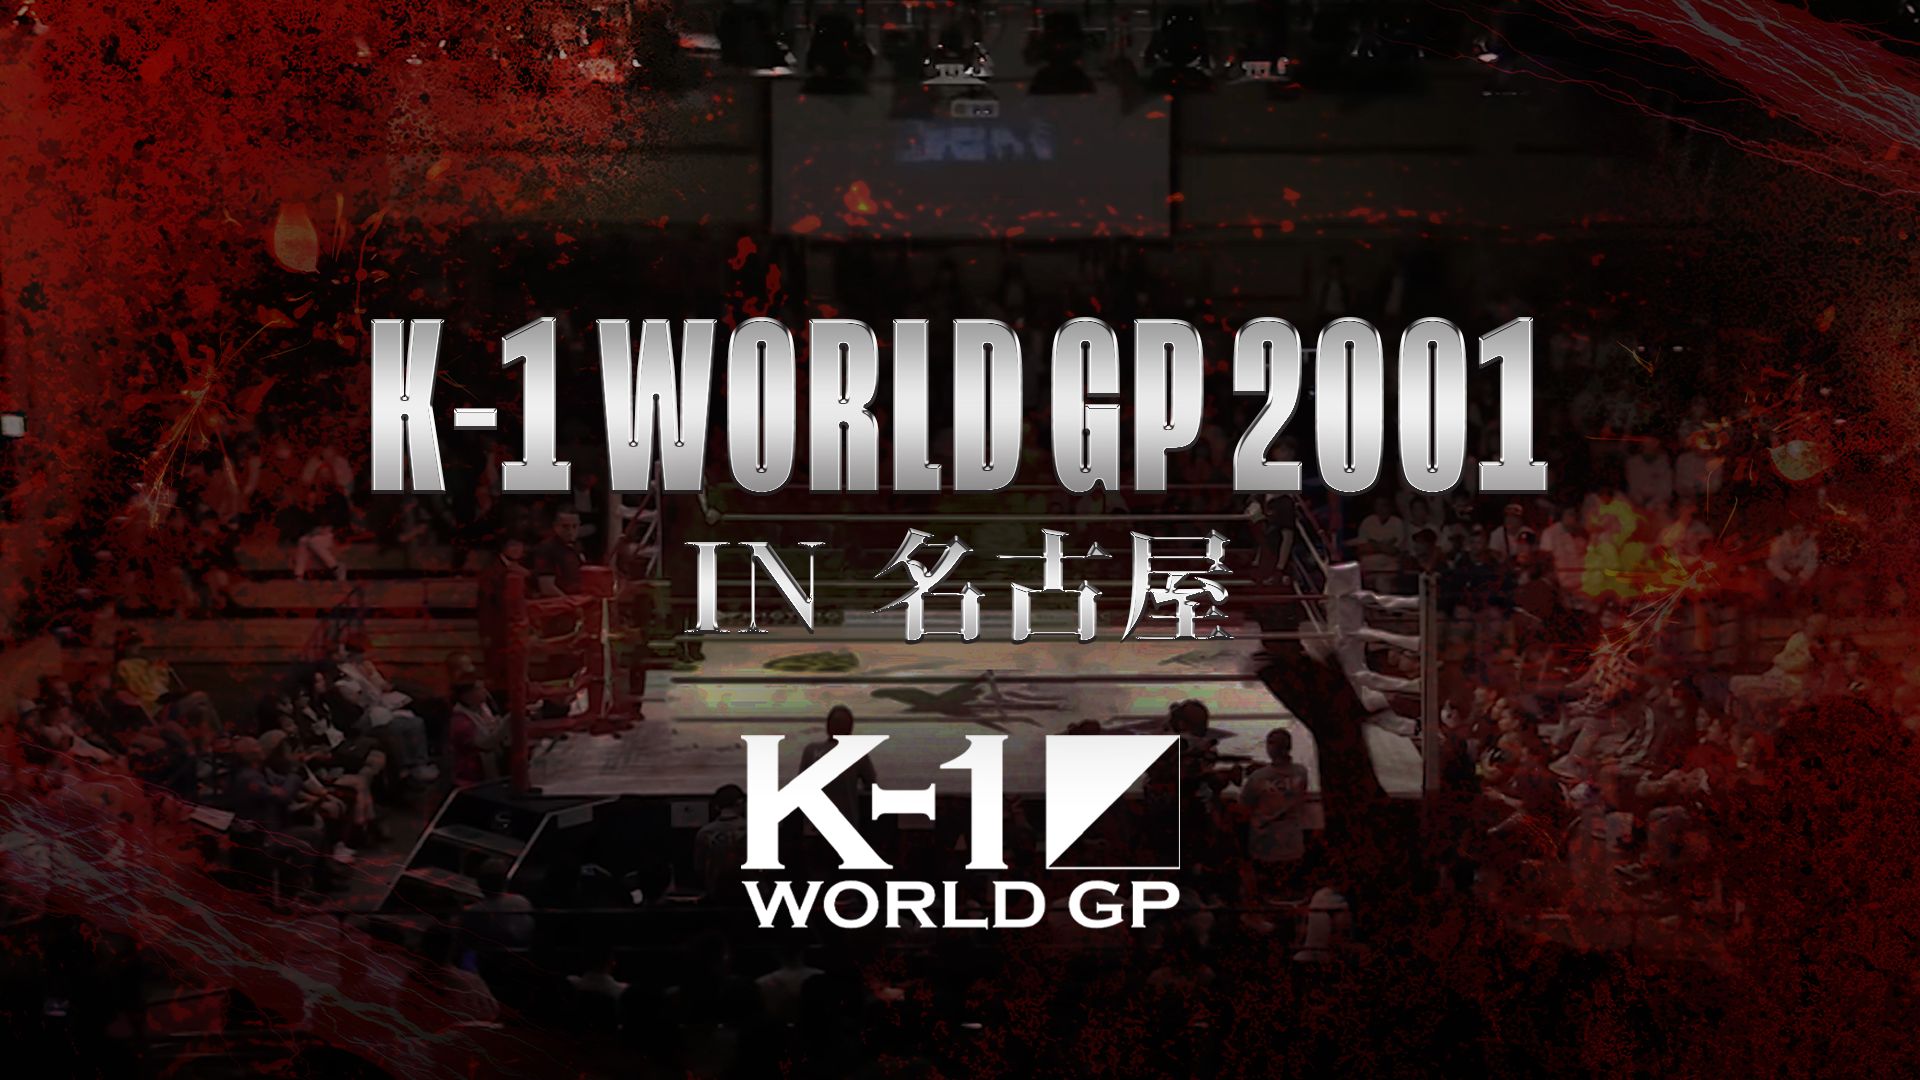 K-1 WORLD GP 2001 in 名古屋